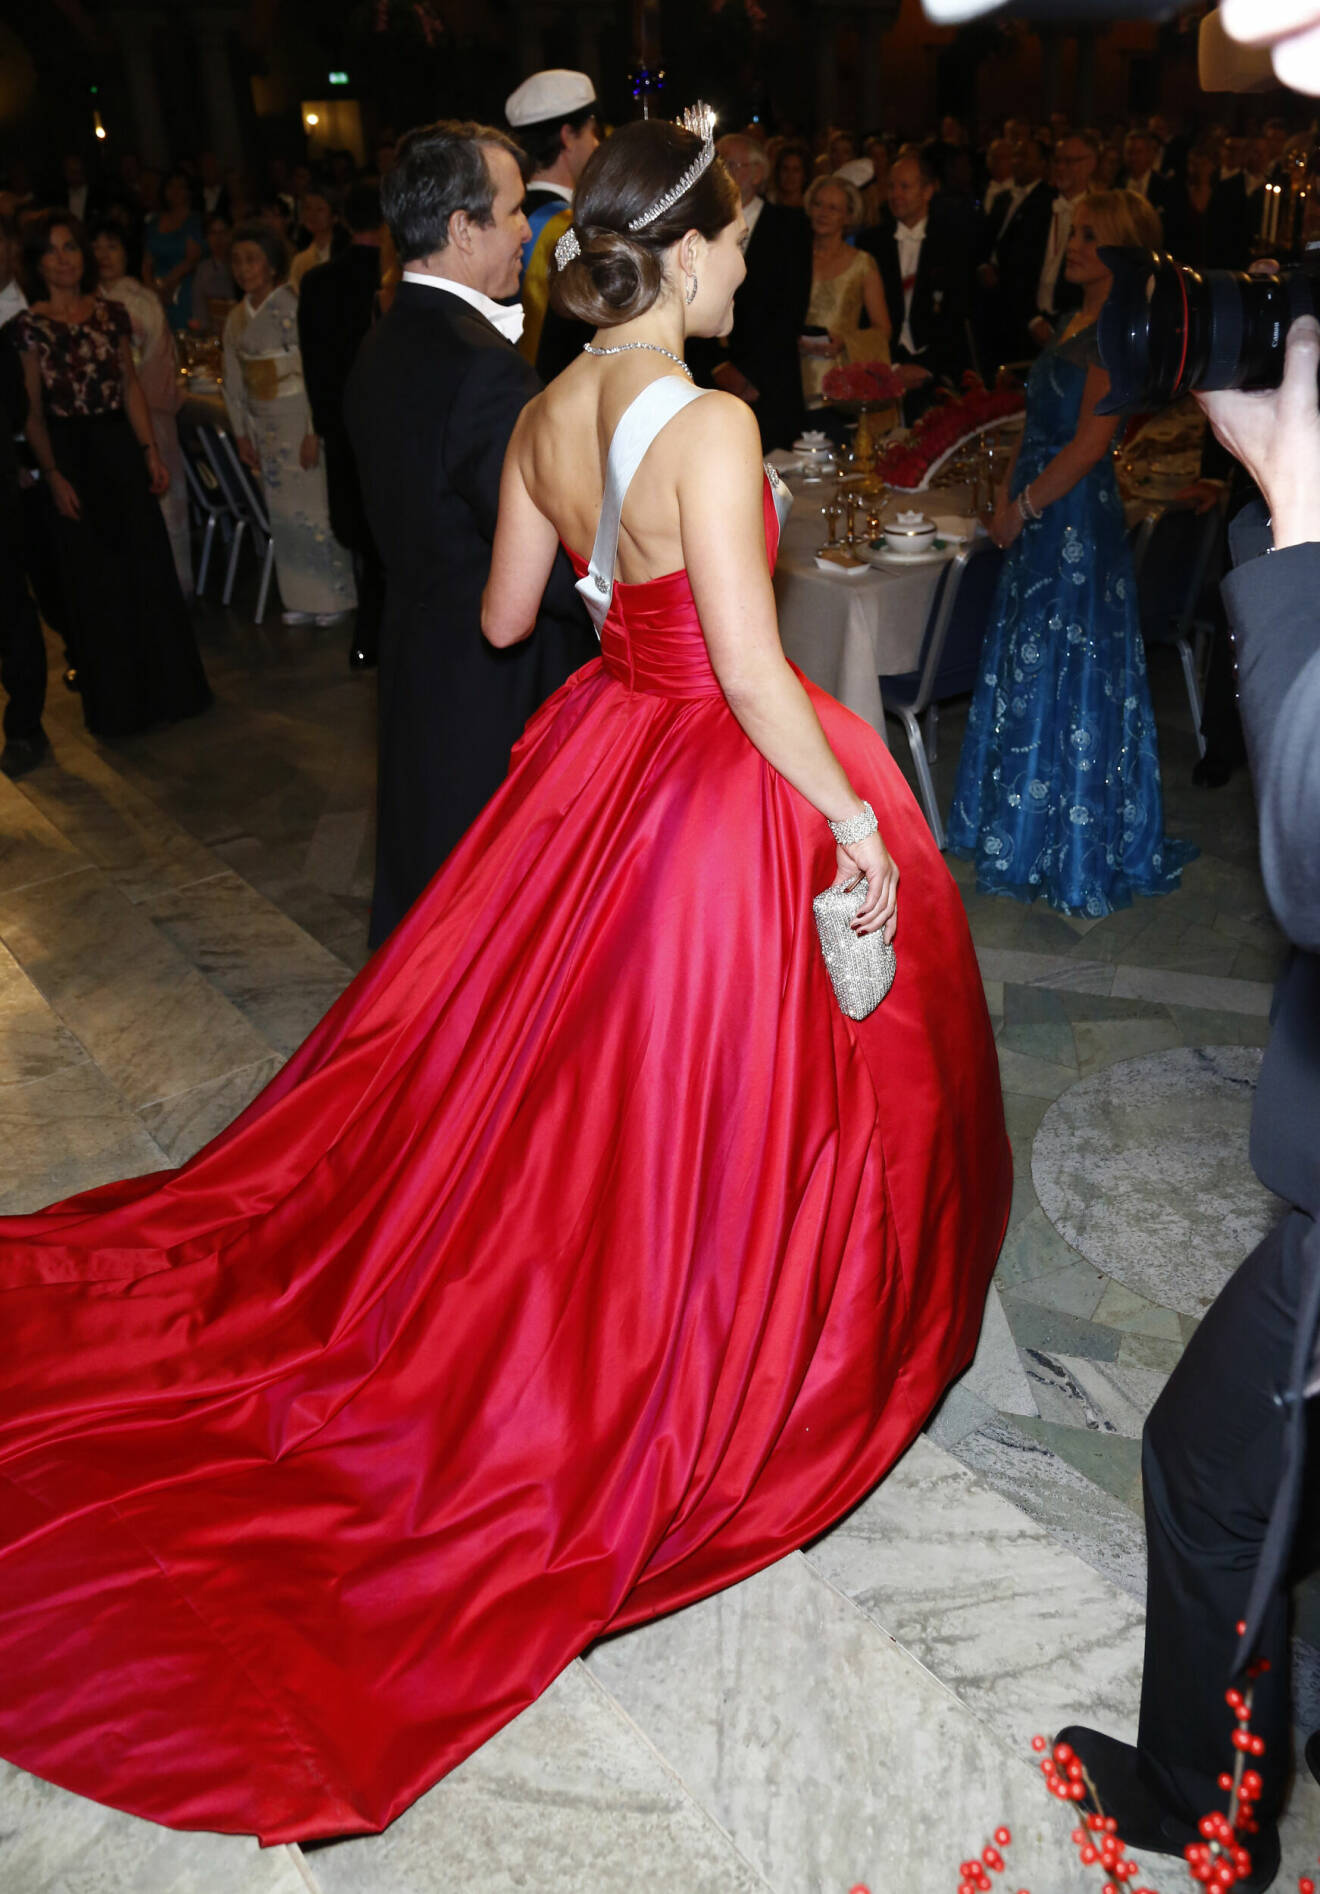 Kronprinsessan Victorias röda Nobelklänning från Nobel 2014 – designer Pär Engsheden